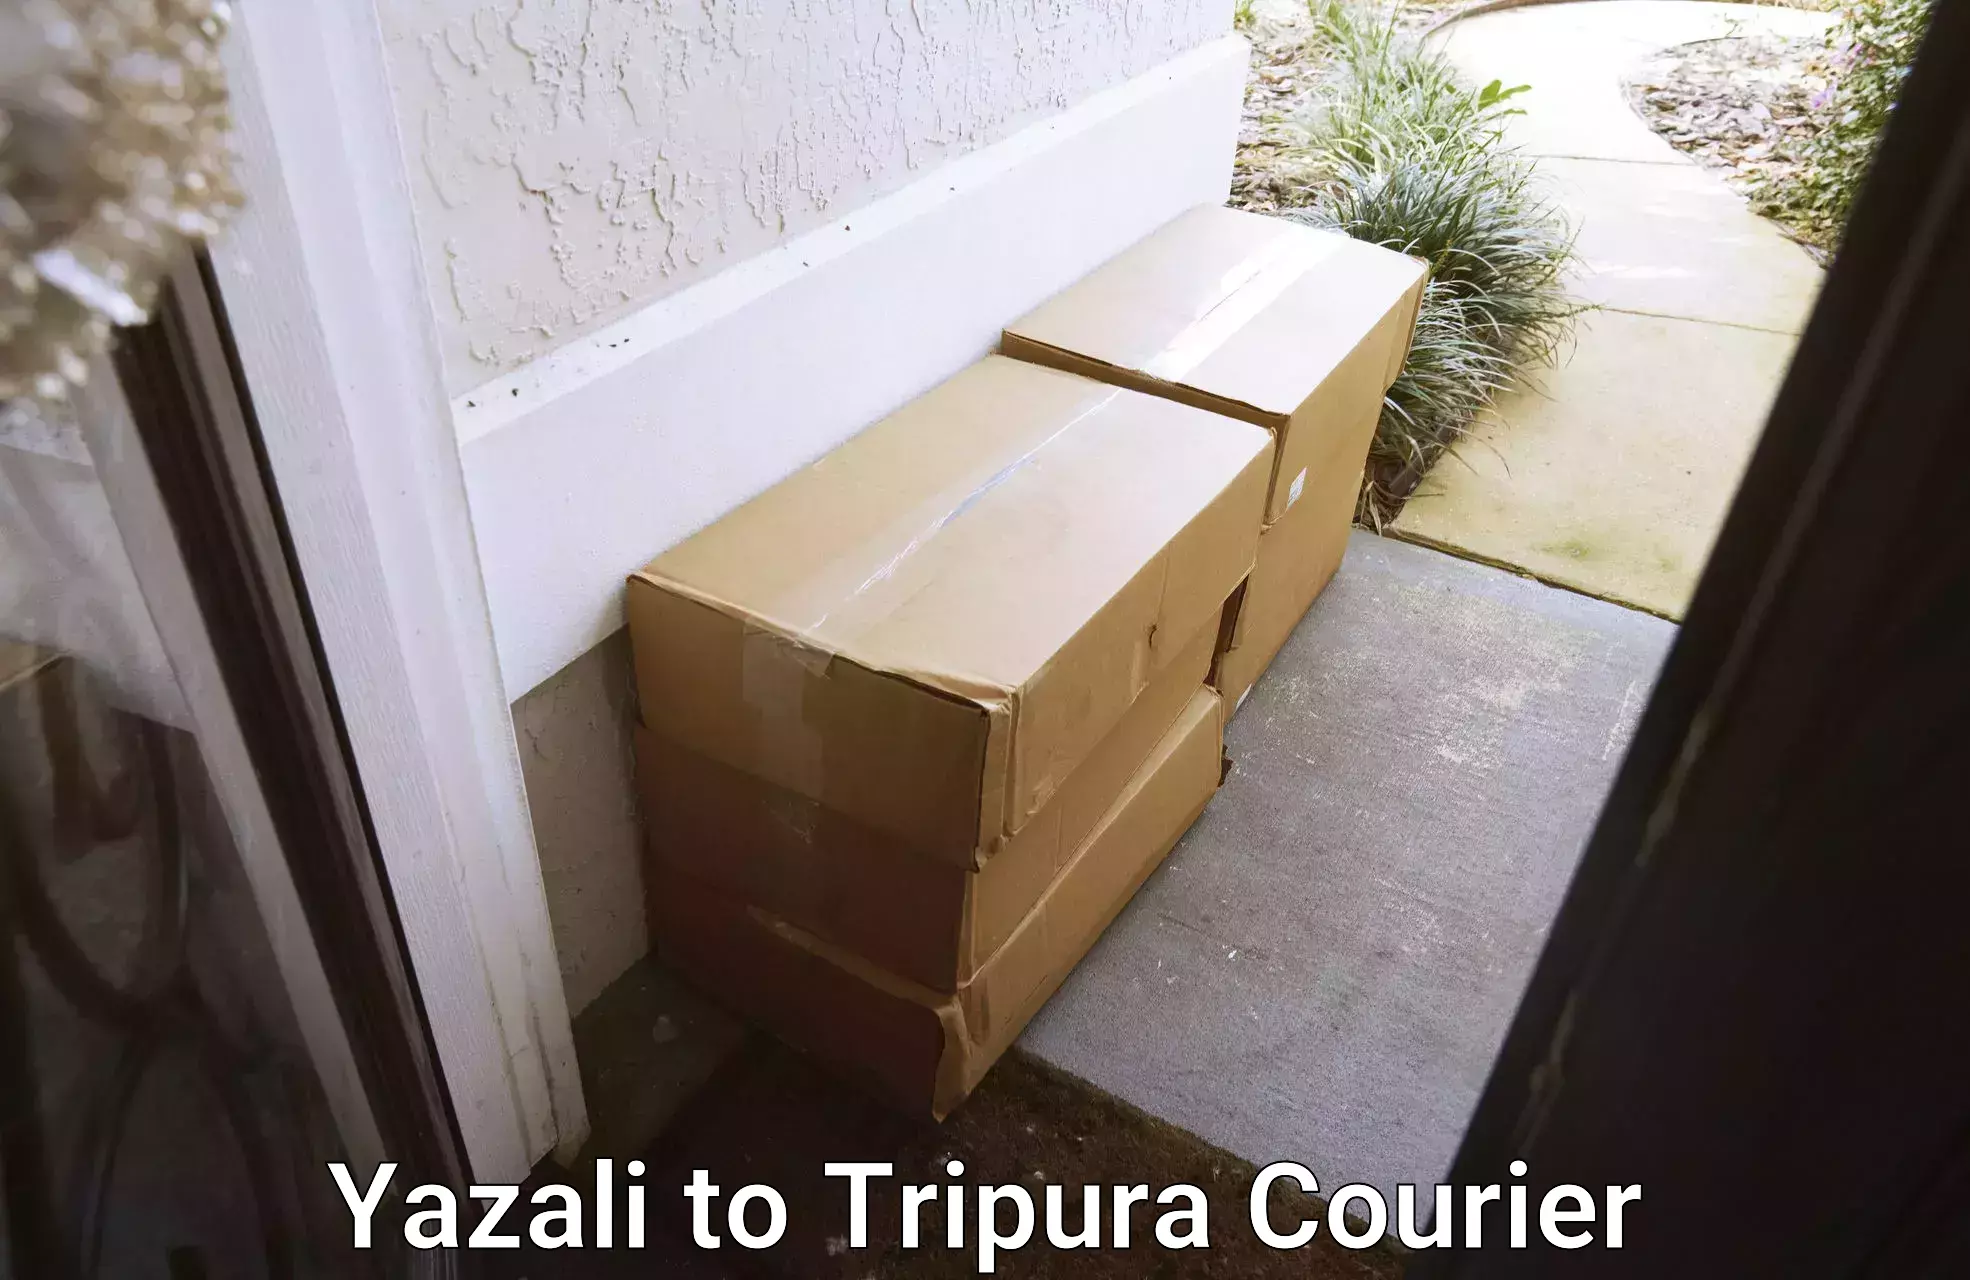 Next day courier Yazali to Tripura